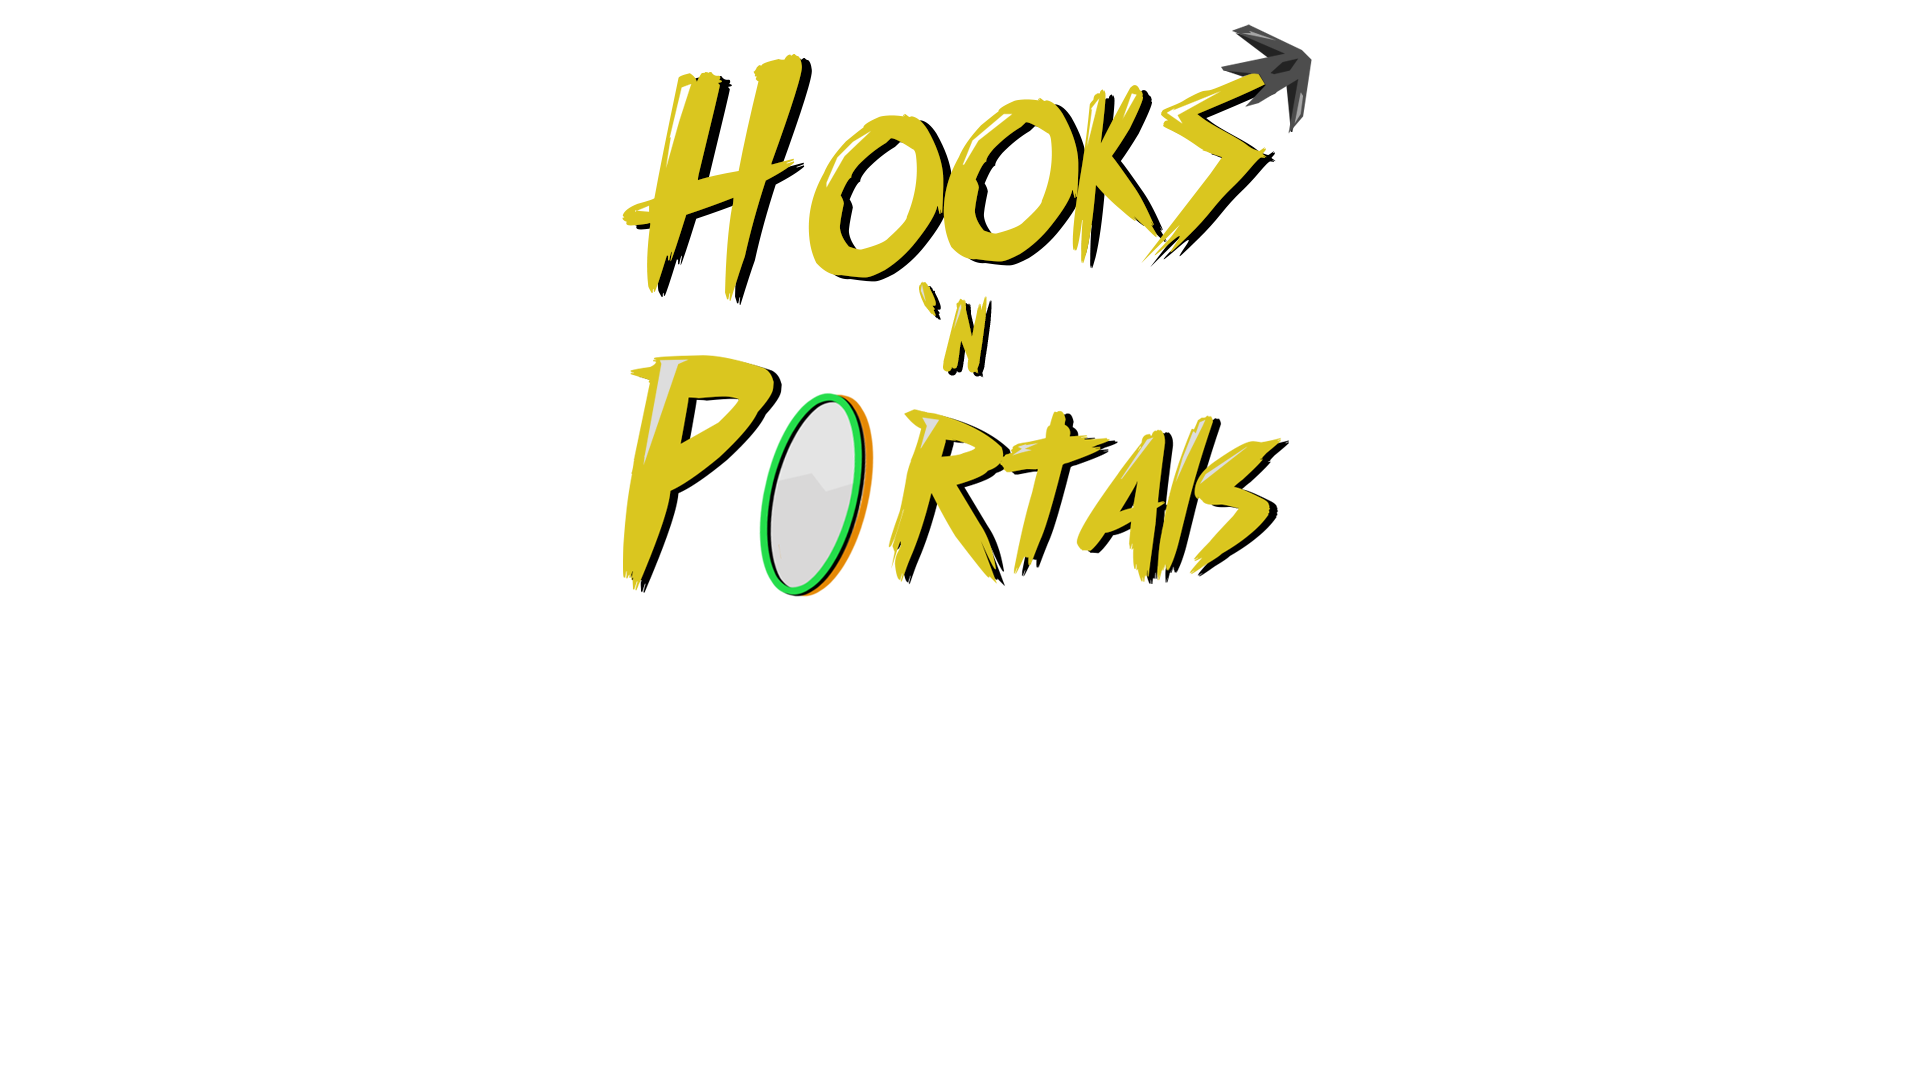 Hooks 'n Portals